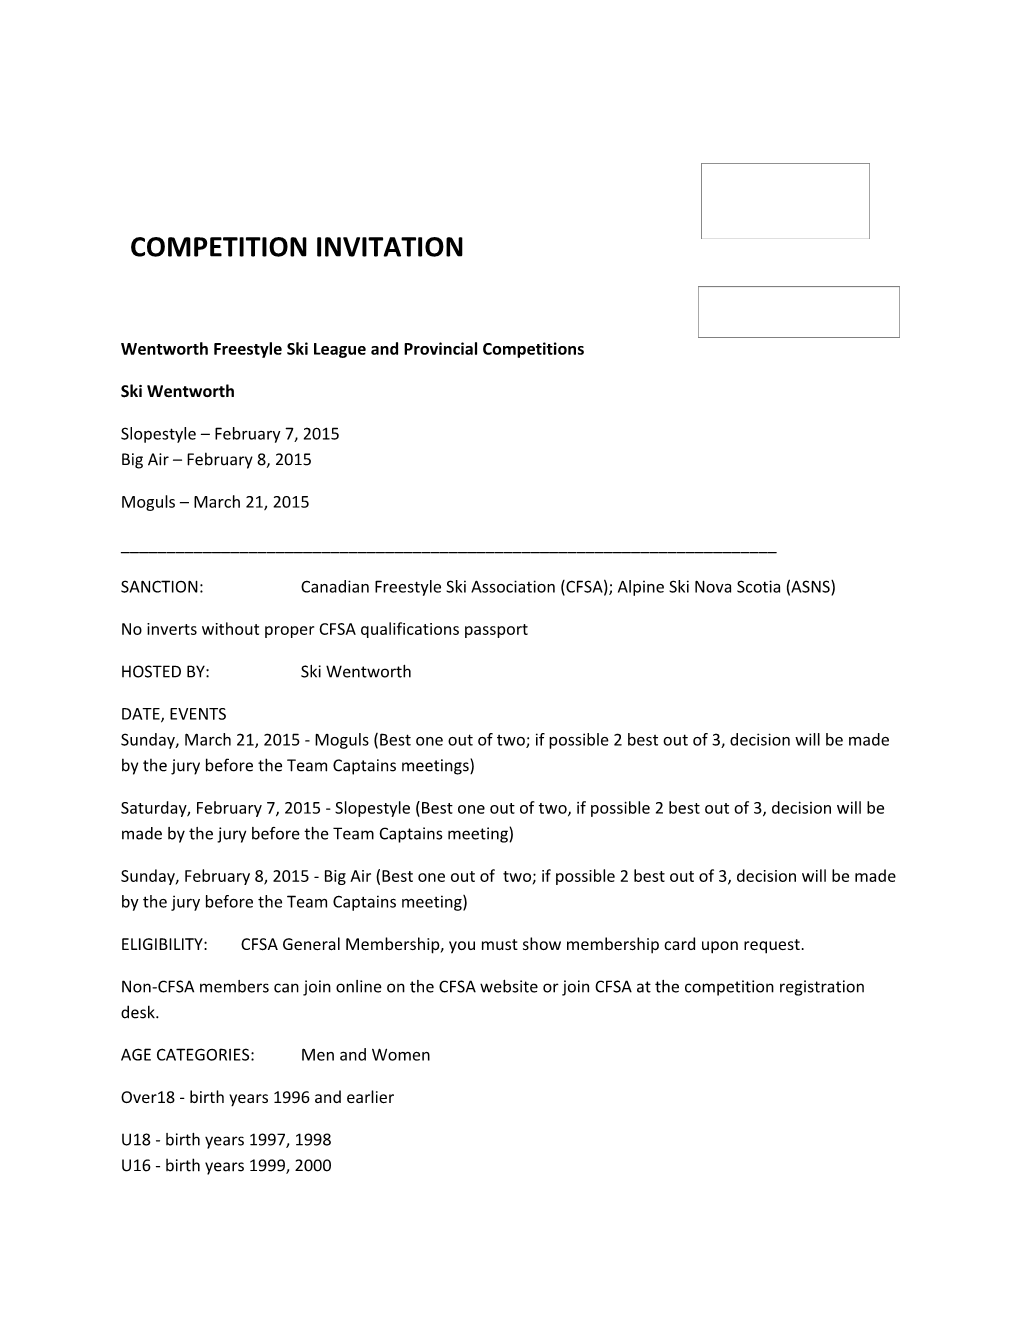 Competition Invitation